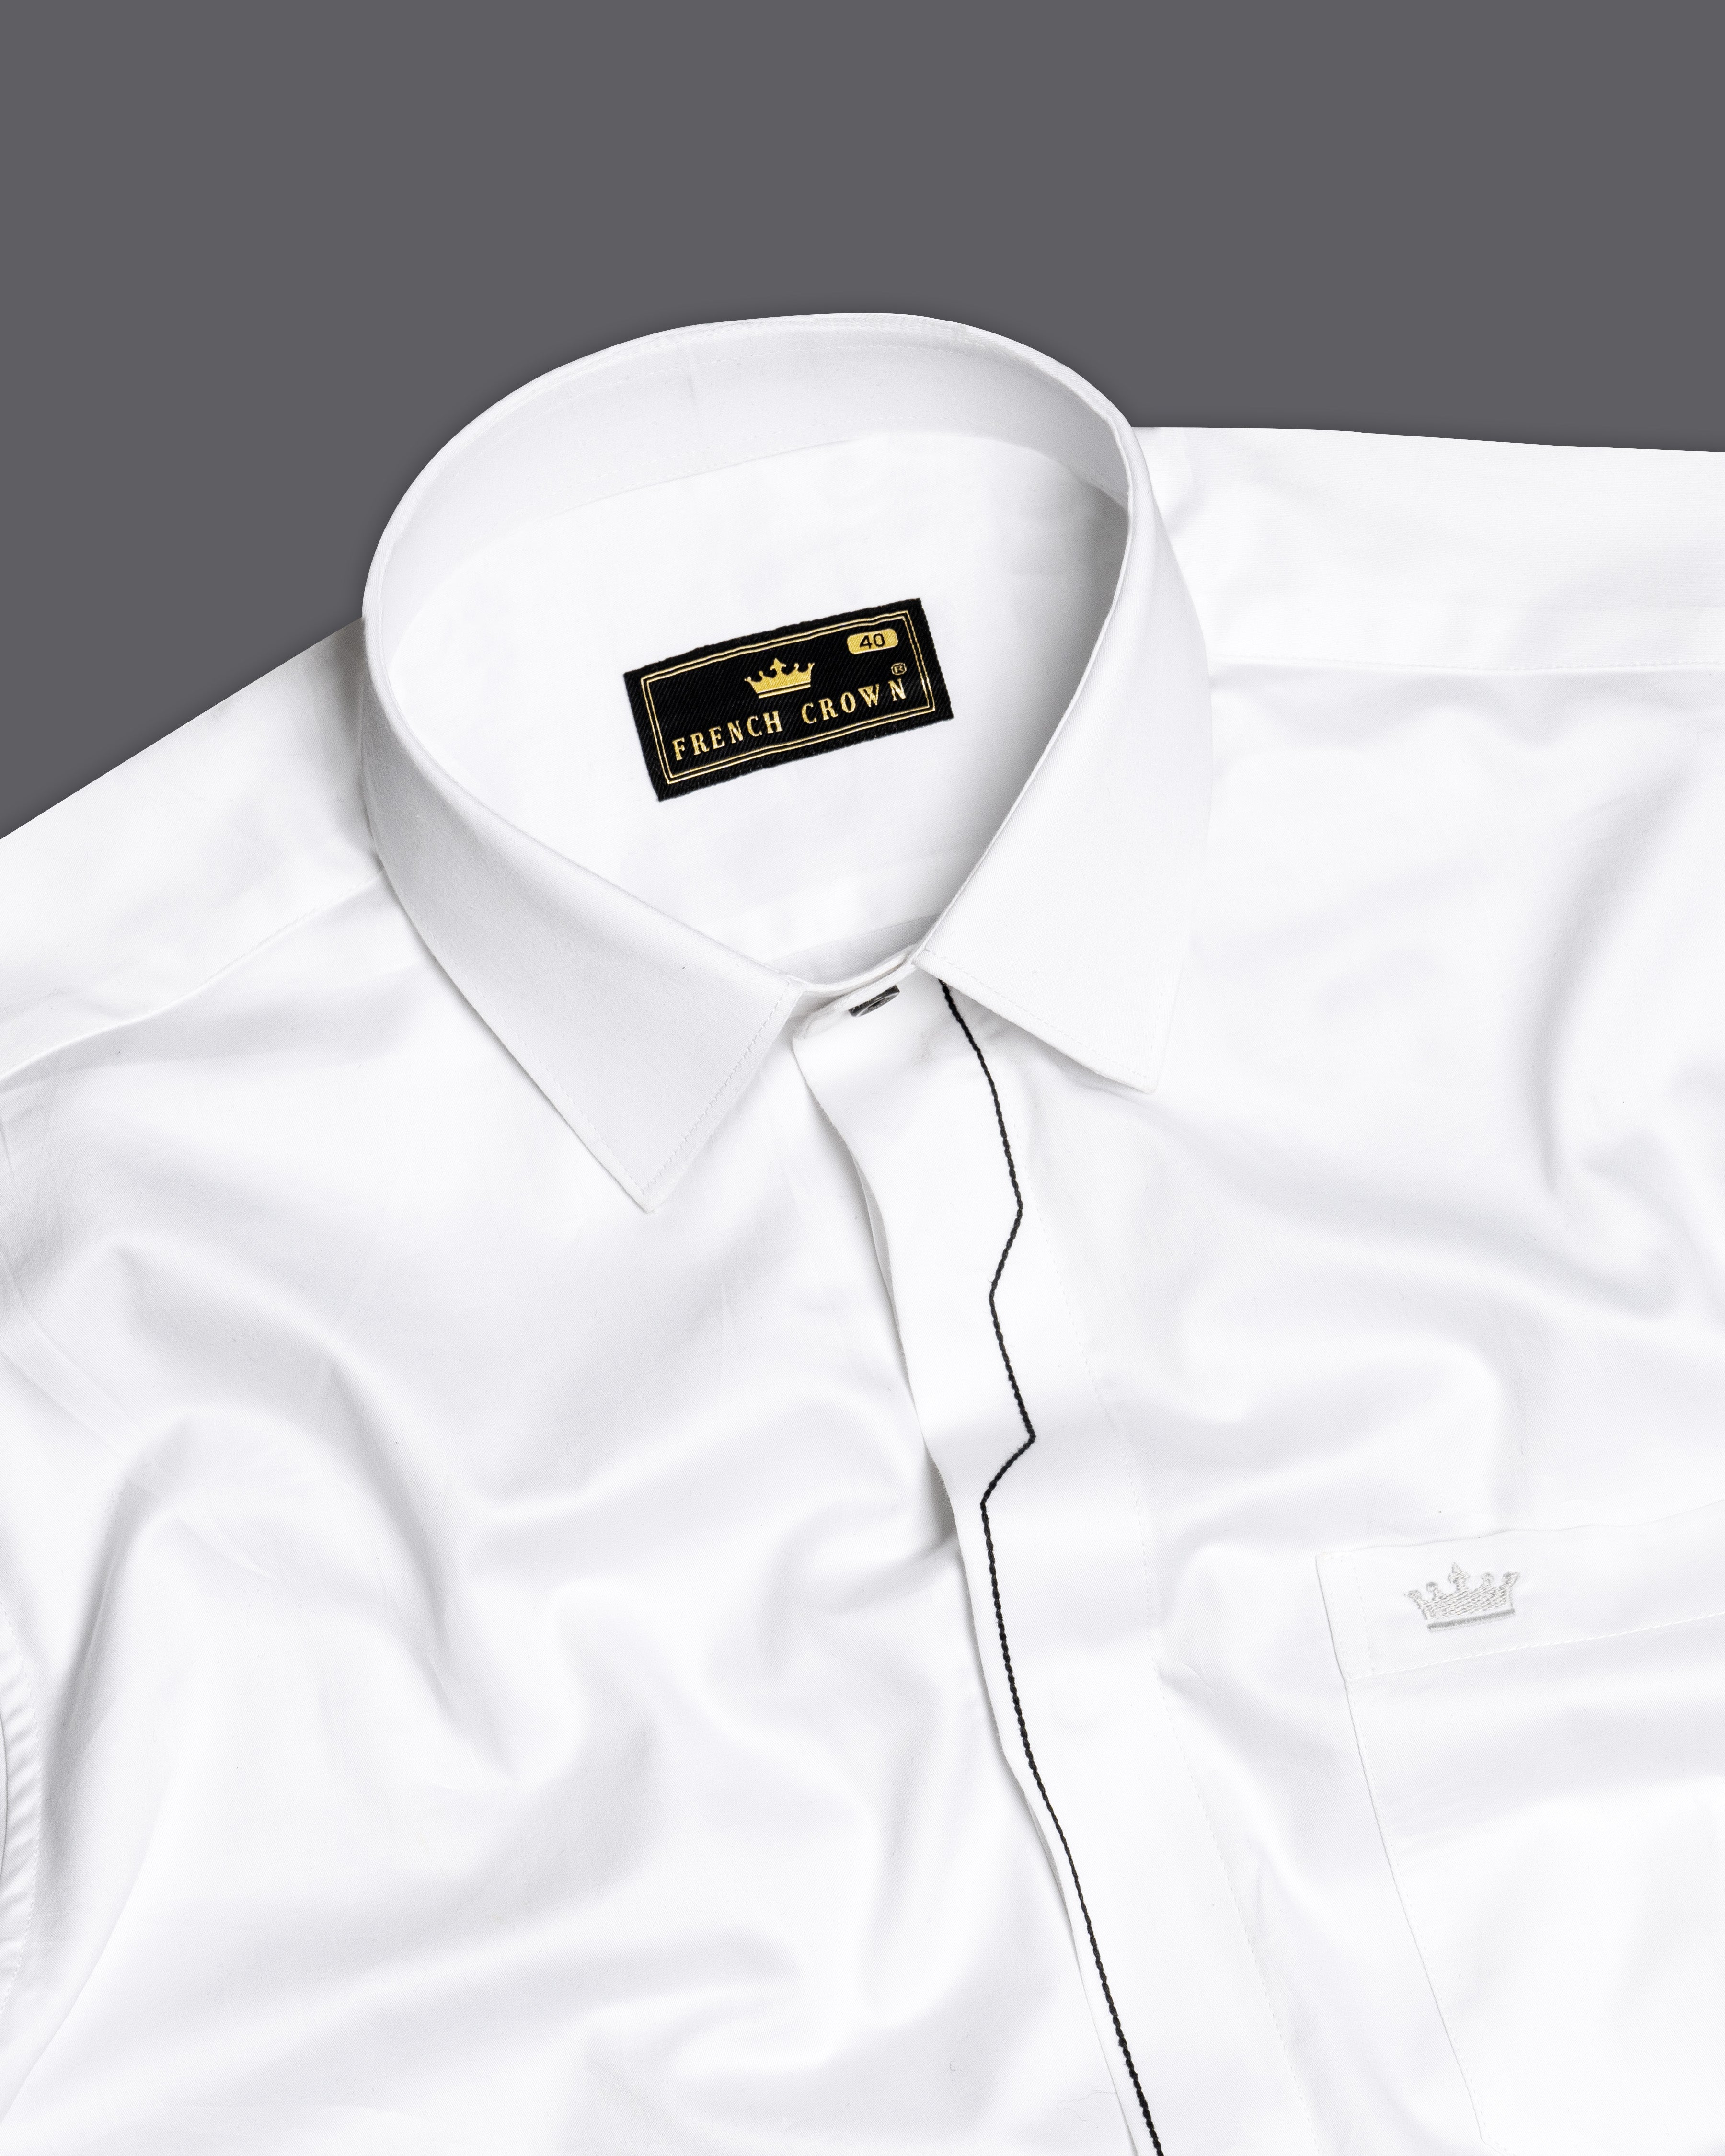 Bright White Subtle Sheen with Black Thread Work Super Soft Premium Cotton Designer Shirt 9528-BLK-P418-38, 9528-BLK-P418-H-38, 9528-BLK-P418-39, 9528-BLK-P418-H-39, 9528-BLK-P418-40, 9528-BLK-P418-H-40, 9528-BLK-P418-42, 9528-BLK-P418-H-42, 9528-BLK-P418-44, 9528-BLK-P418-H-44, 9528-BLK-P418-46, 9528-BLK-P418-H-46, 9528-BLK-P418-48, 9528-BLK-P418-H-48, 9528-BLK-P418-50, 9528-BLK-P418-H-50, 9528-BLK-P418-52, 9528-BLK-P418-H-52